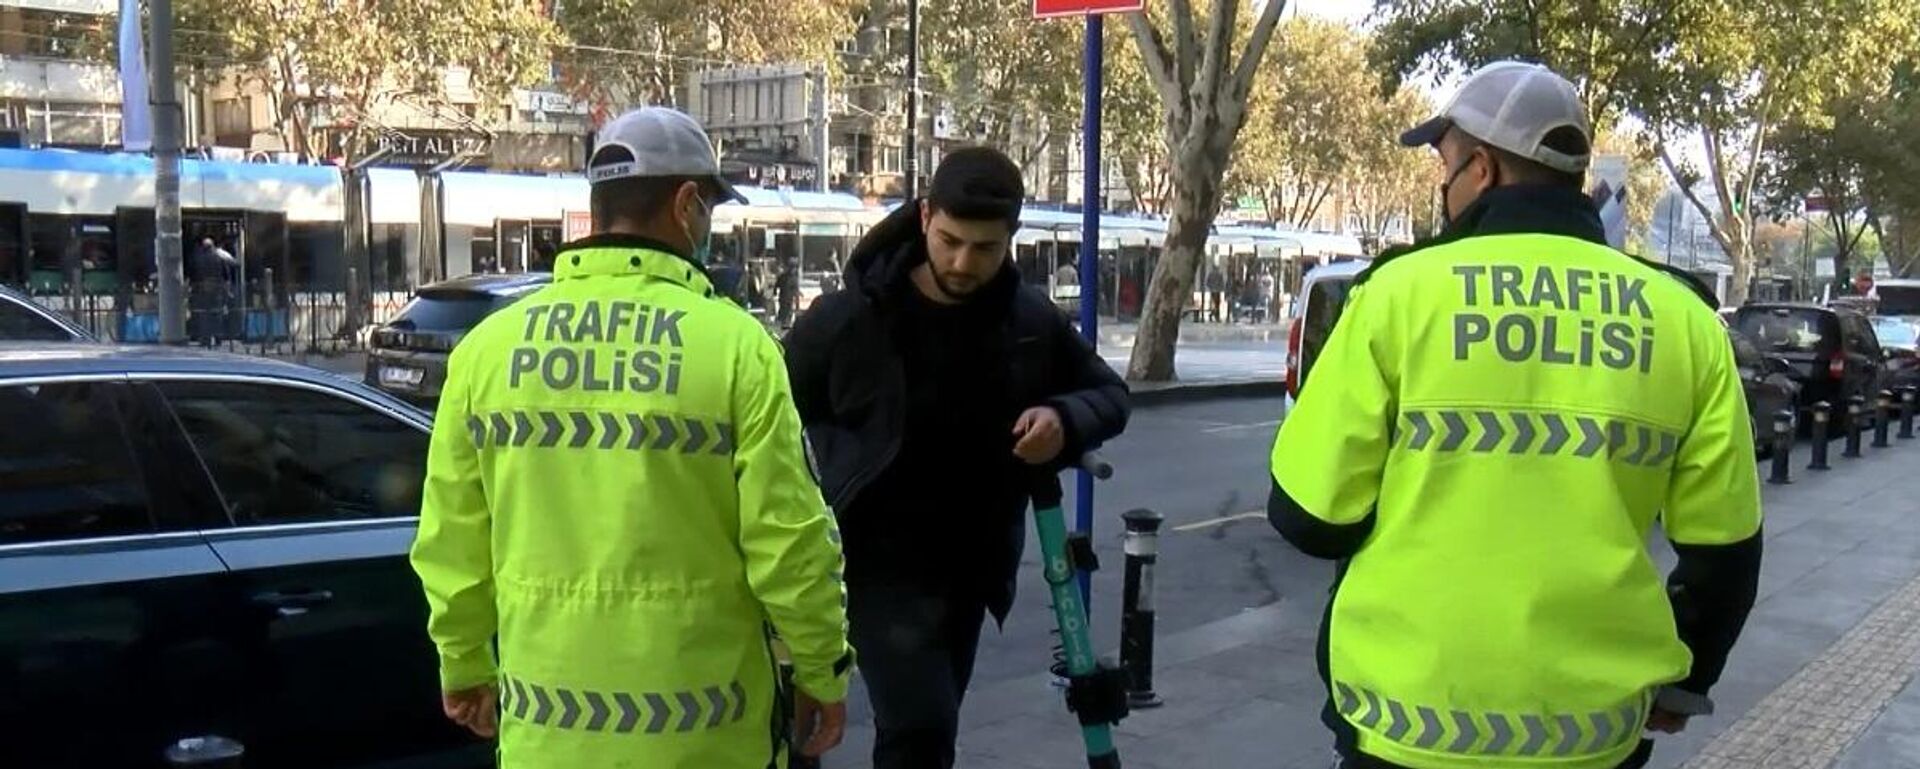 Fatih'te scooter denetimi: ''Toplu taşıma kullanmamak için scooter aldım daha pahalıya patladı''  - Sputnik Türkiye, 1920, 23.11.2021